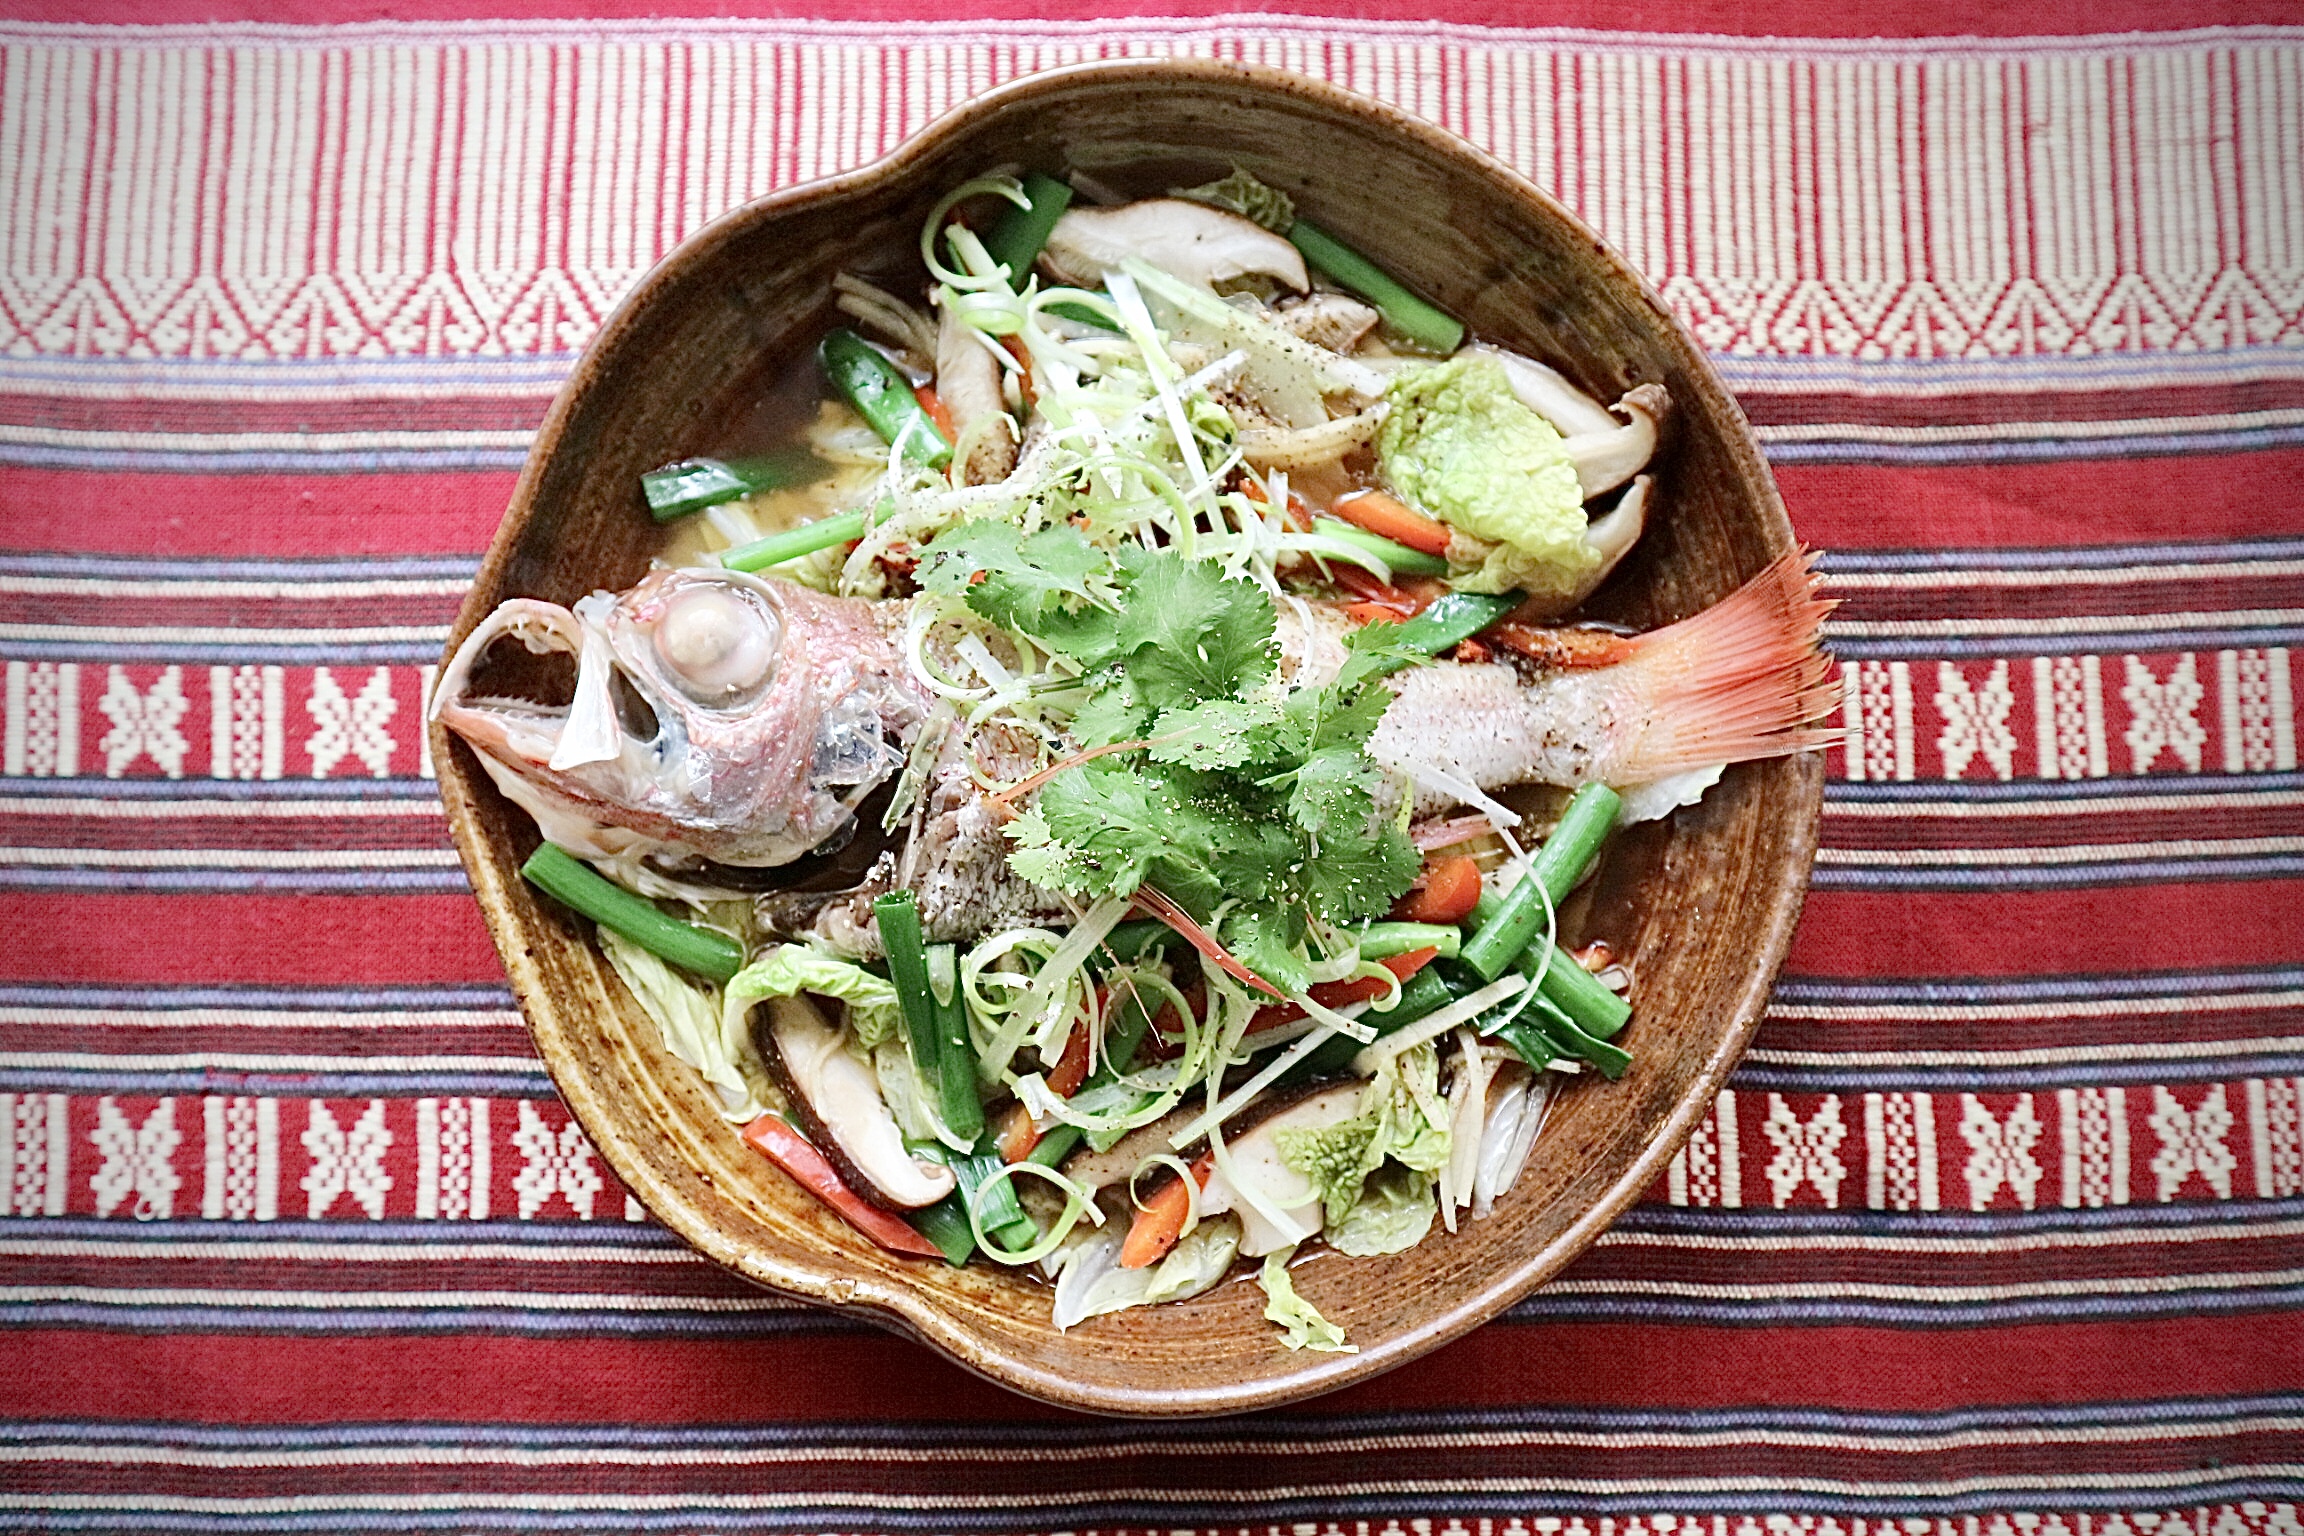 アカムツとたっぷり野菜のベトナム風姿蒸し 海の恵み 食の底力 Japan 公式レシピサイト